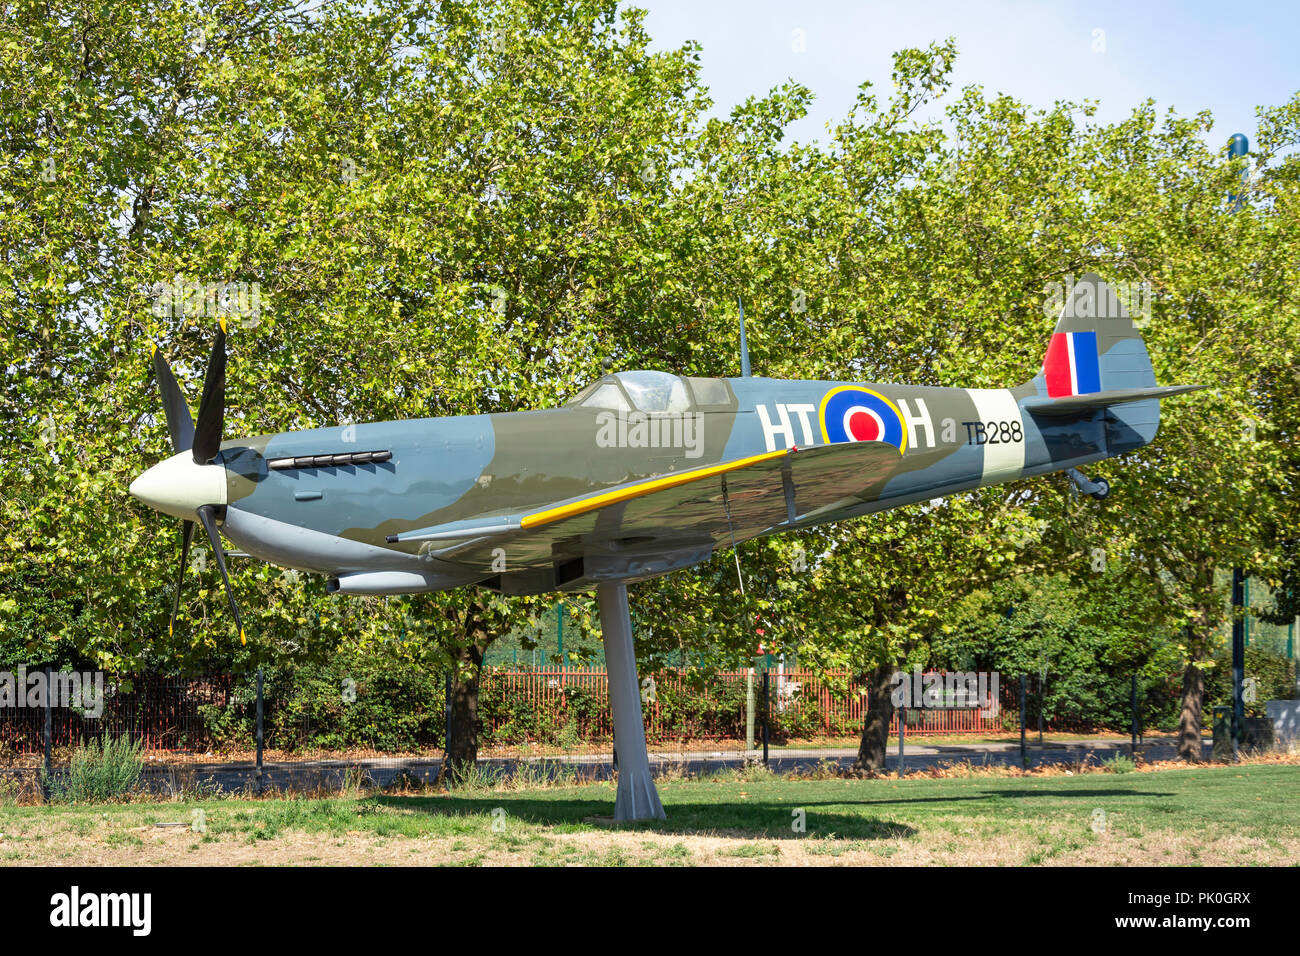 Chasseur Spitfire de la Royal Air Force Museum, Grahame Park Way, Colindale, Région de Barnet, Greater London, Angleterre, Royaume-Uni Banque D'Images